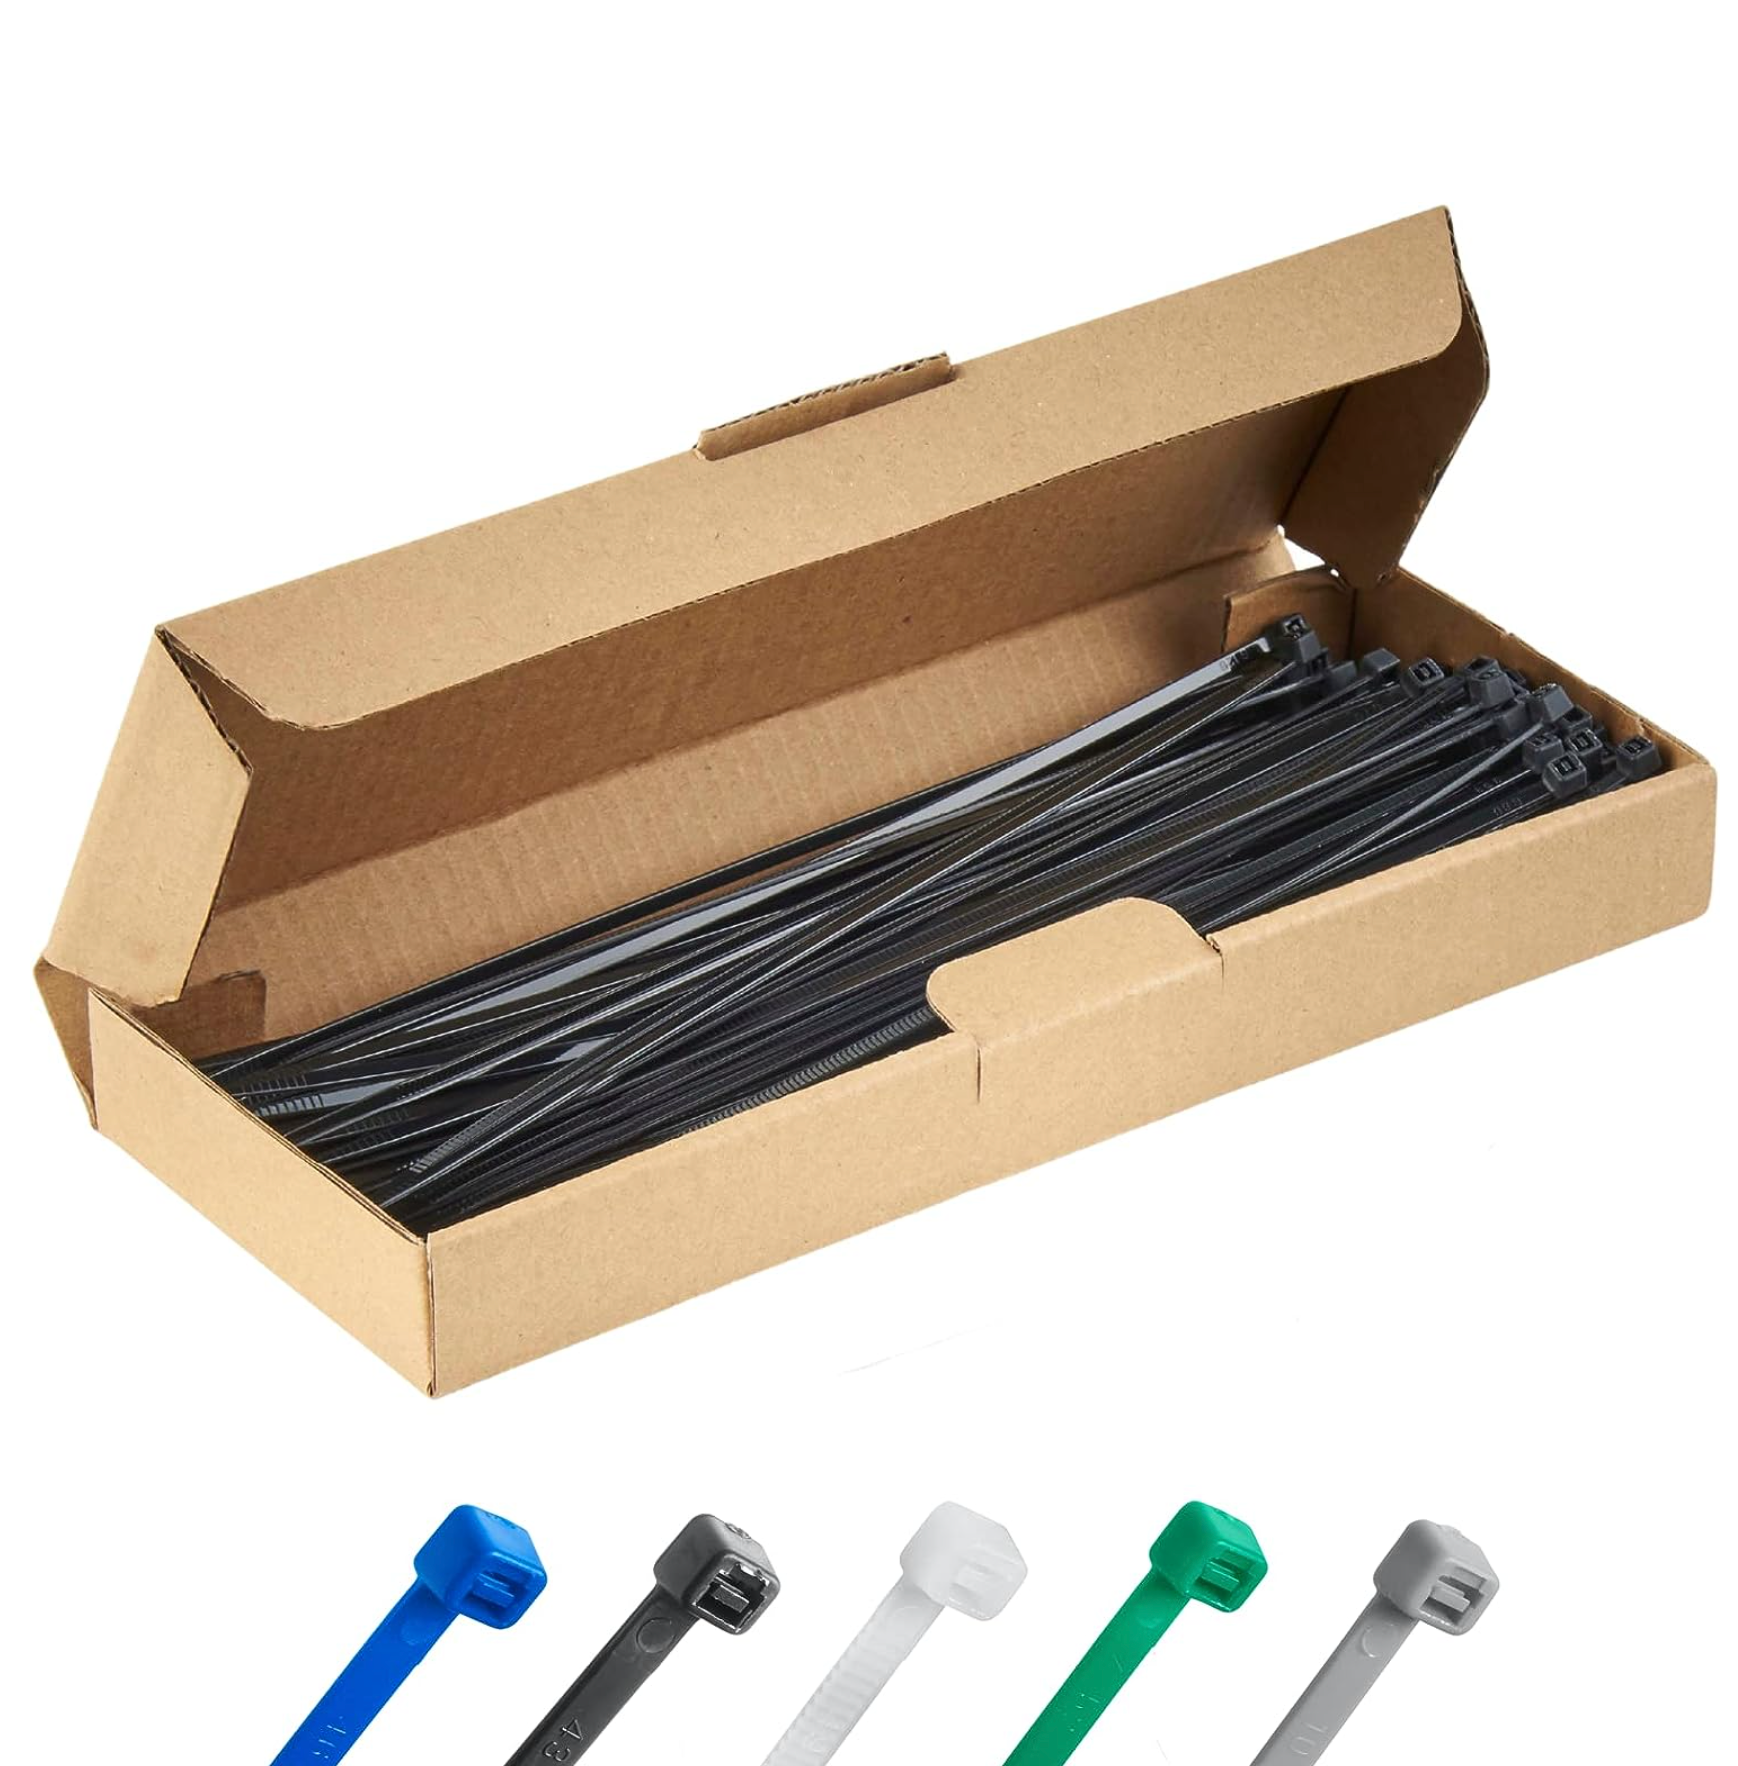 Haus Projekt 200x2.5mm Small Cable Ties, 100pcs Premium Industrial Zip Ties